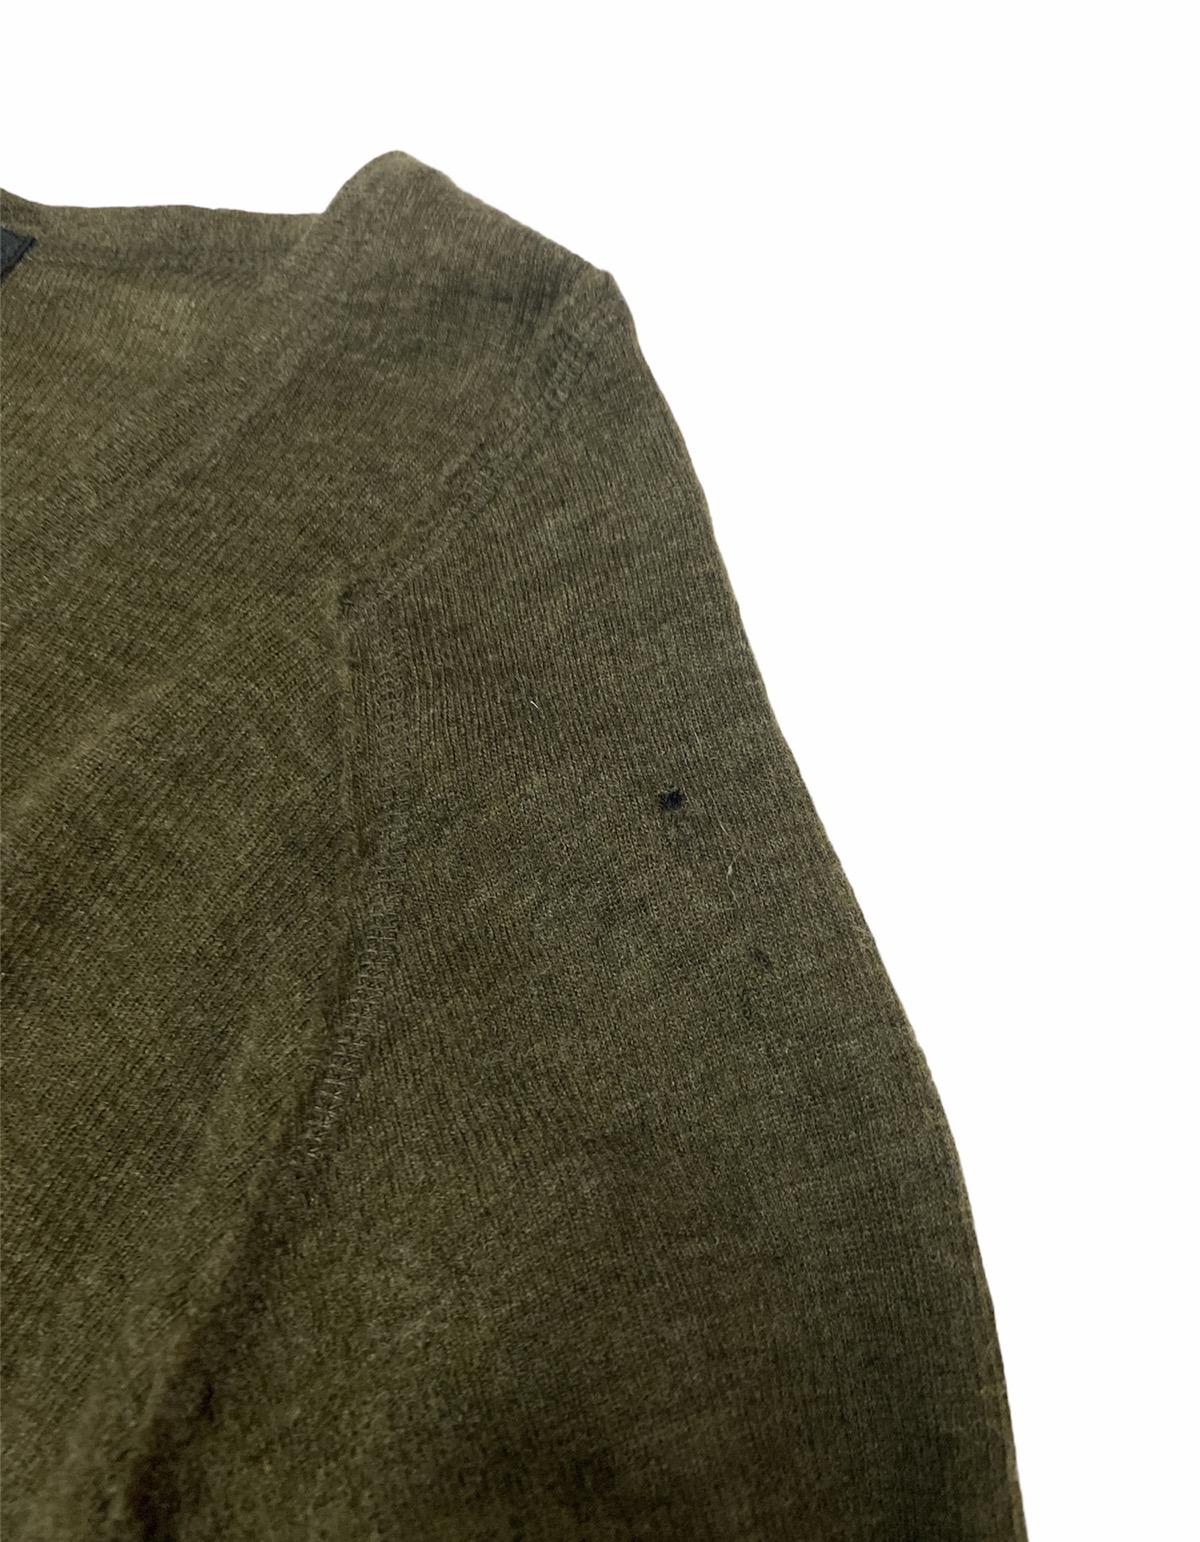 Cabane De Zucca - Japanese Brand Cabane De Zucca Dark Green Knit Sweater - 6